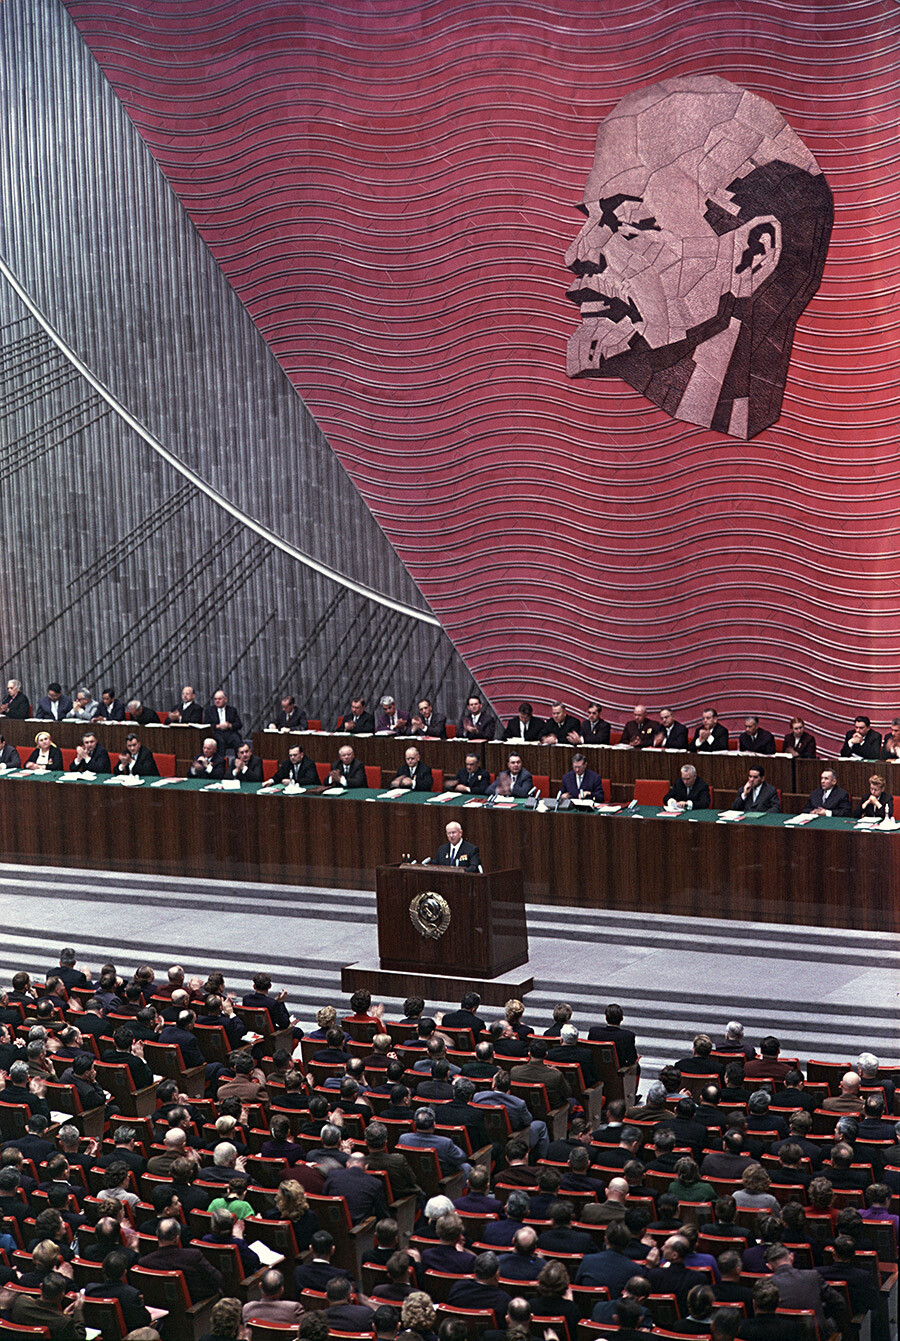  Der XXII. Kongress der Kommunistischen Partei der Sowjetunion, 1961. Nikita Chruschtschow steht auf der Tribüne.